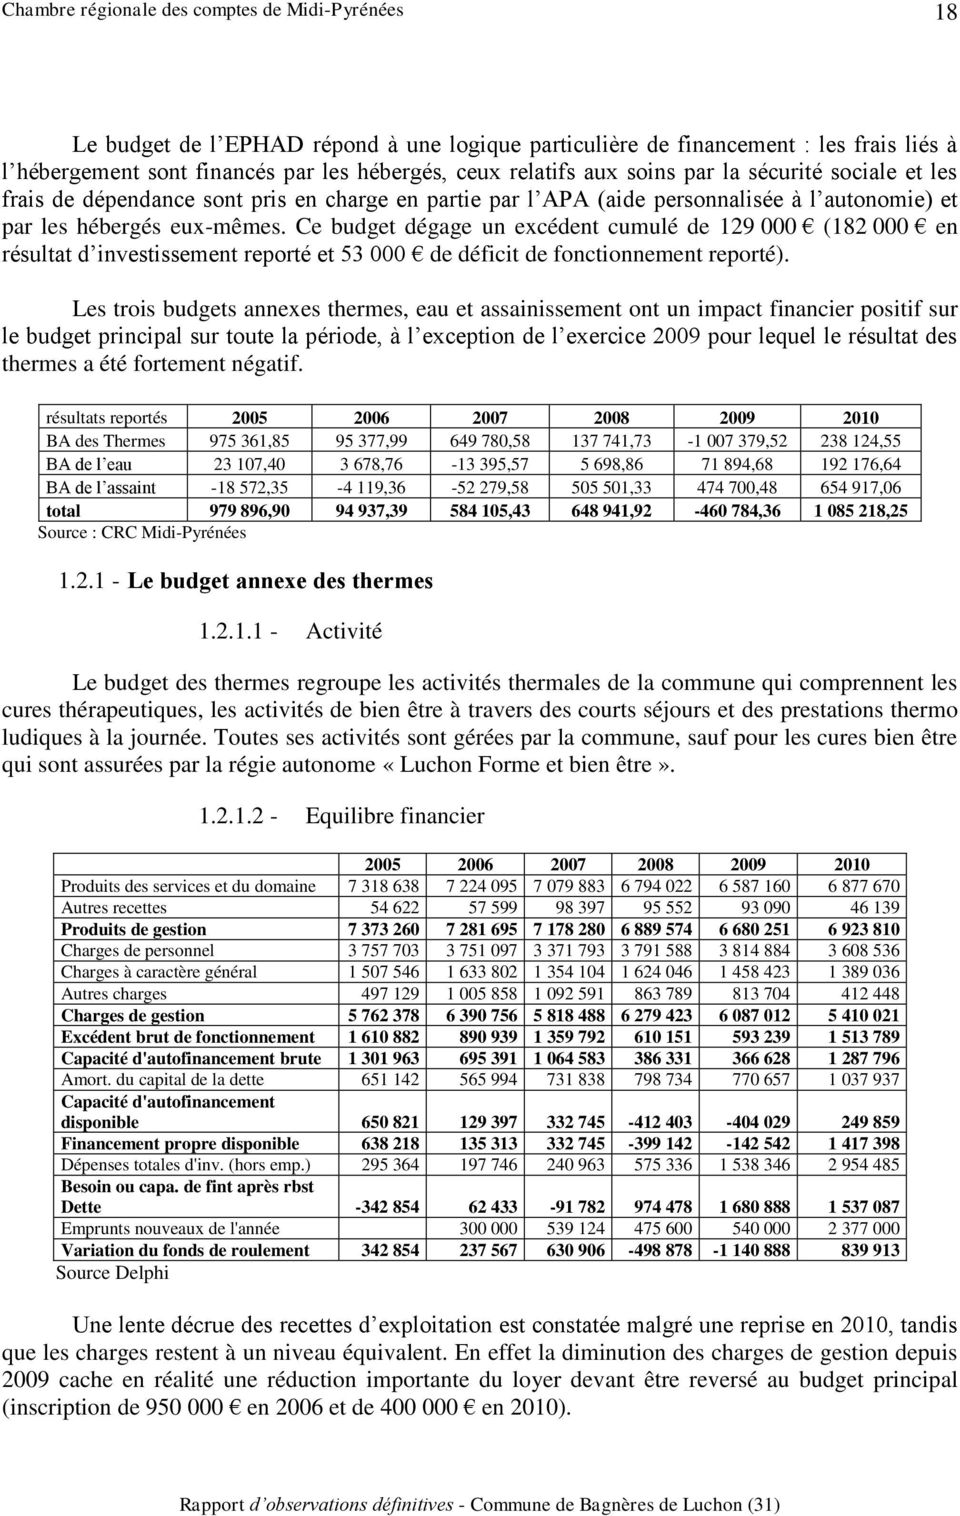 Ce budget dégage un excédent cumulé de 129 000 (182 000 en résultat d investissement reporté et 53 000 de déficit de fonctionnement reporté).